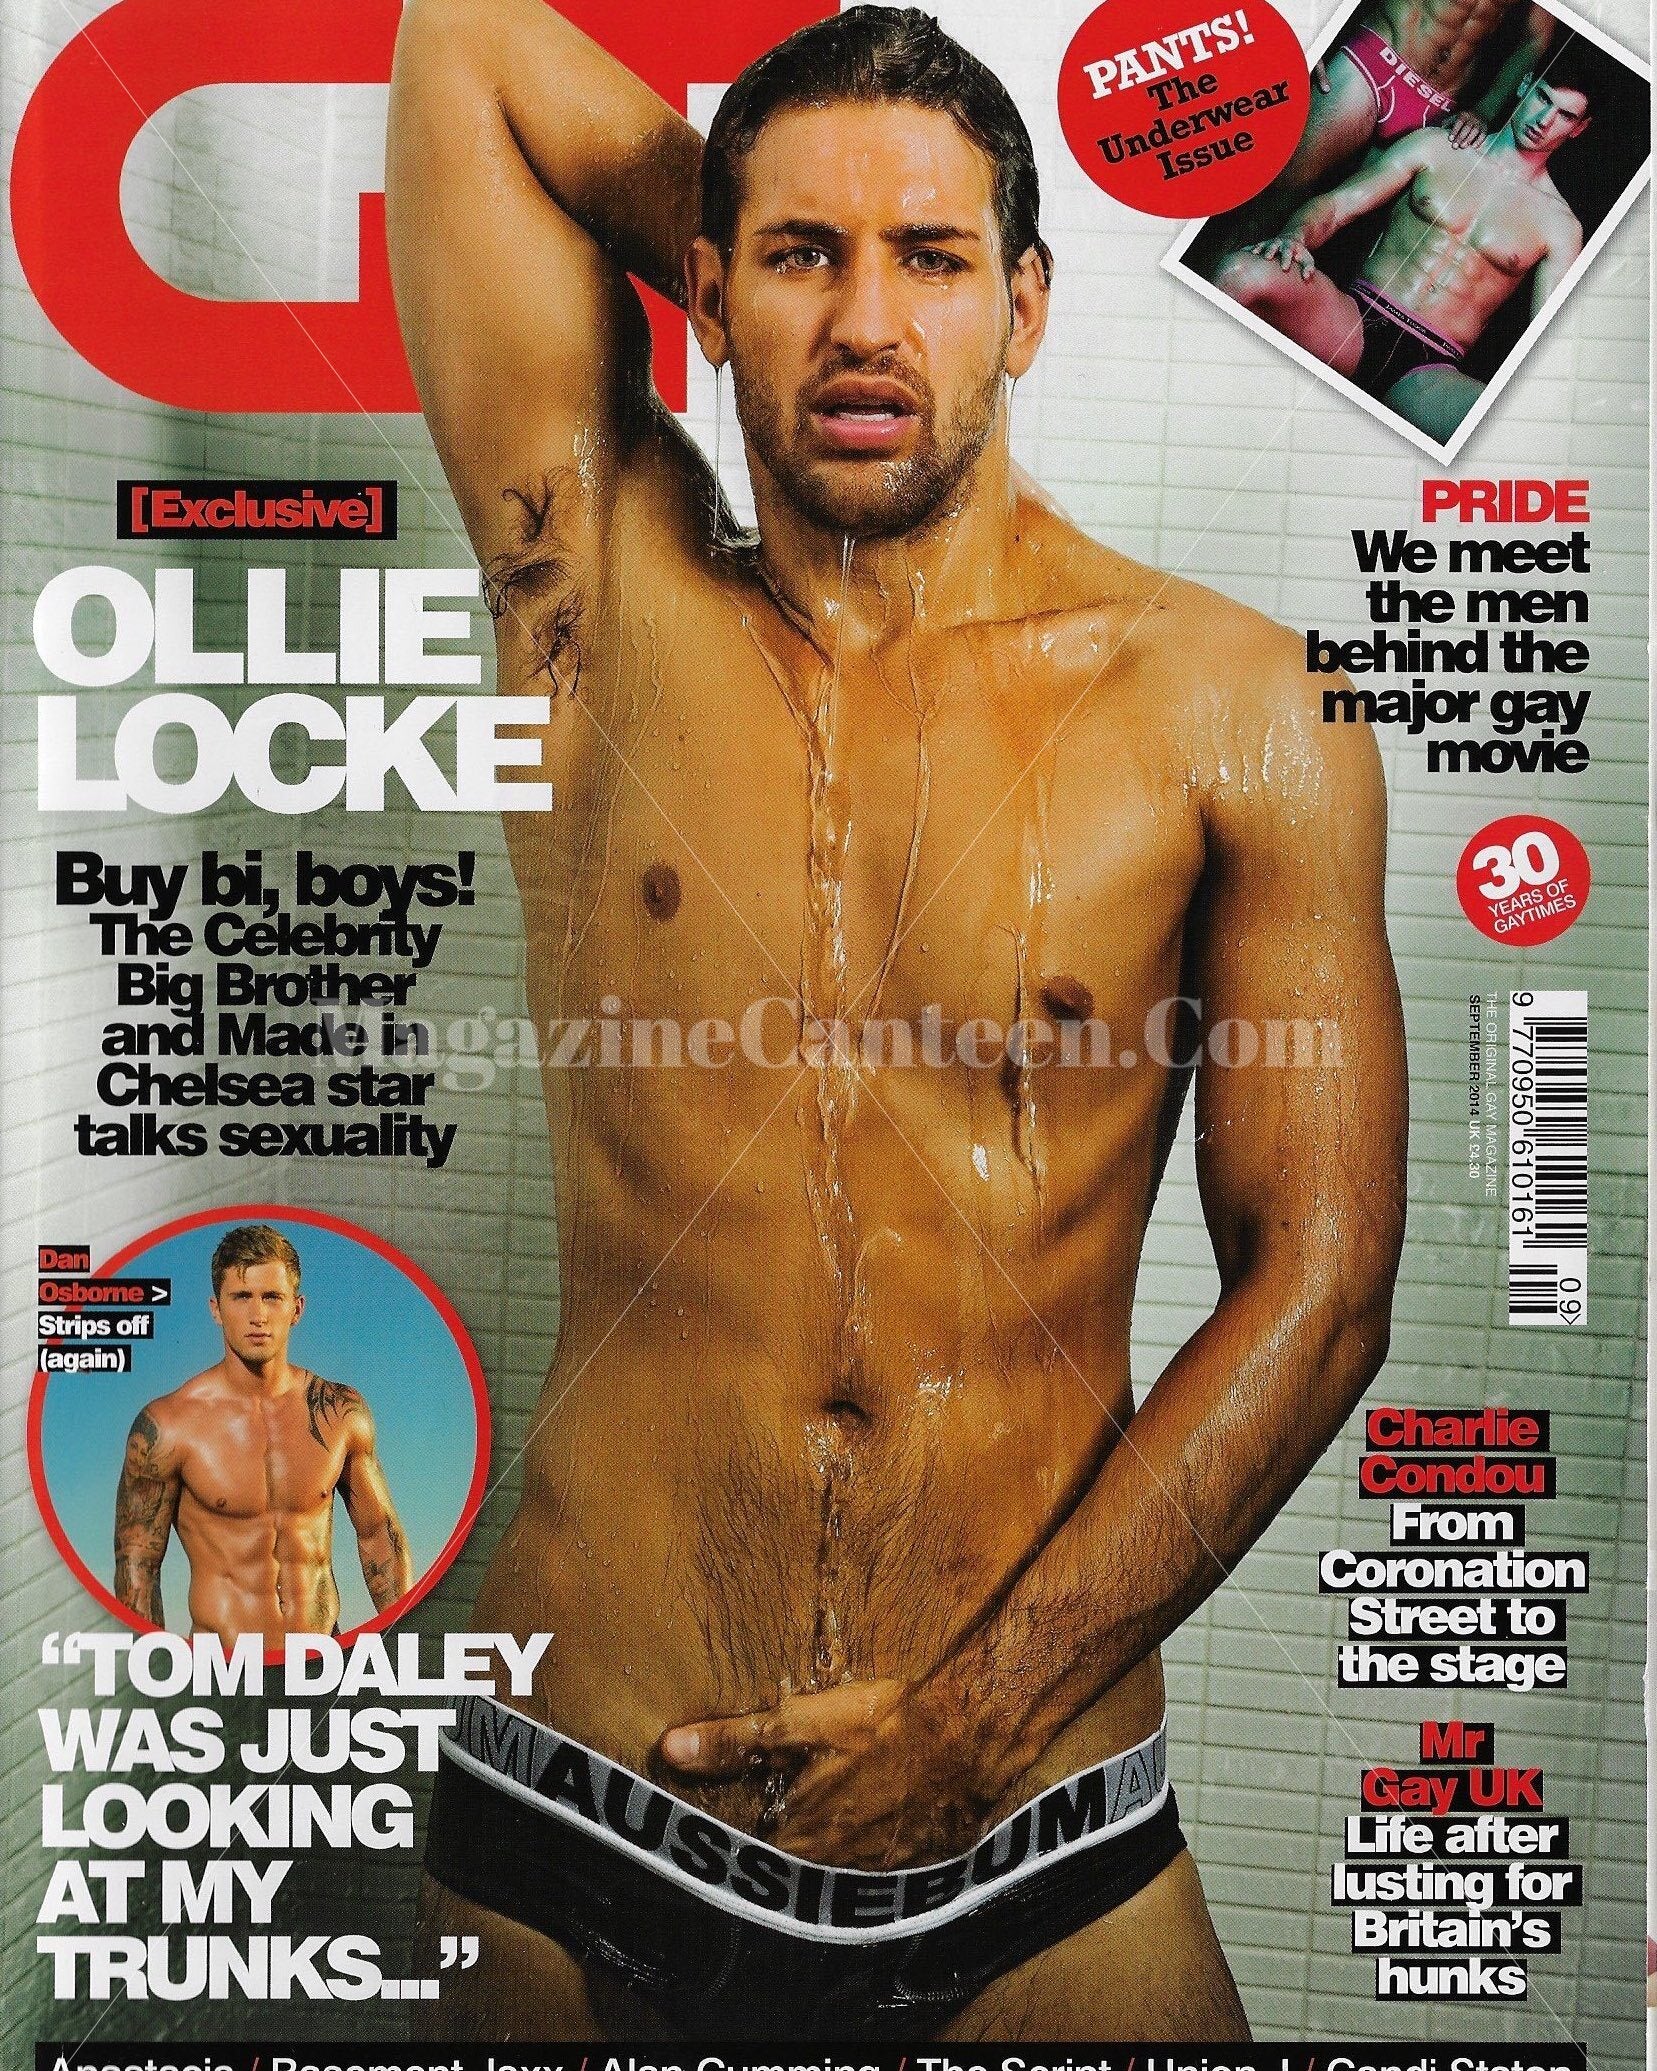 Gay Times Magazine - Ollie Locke